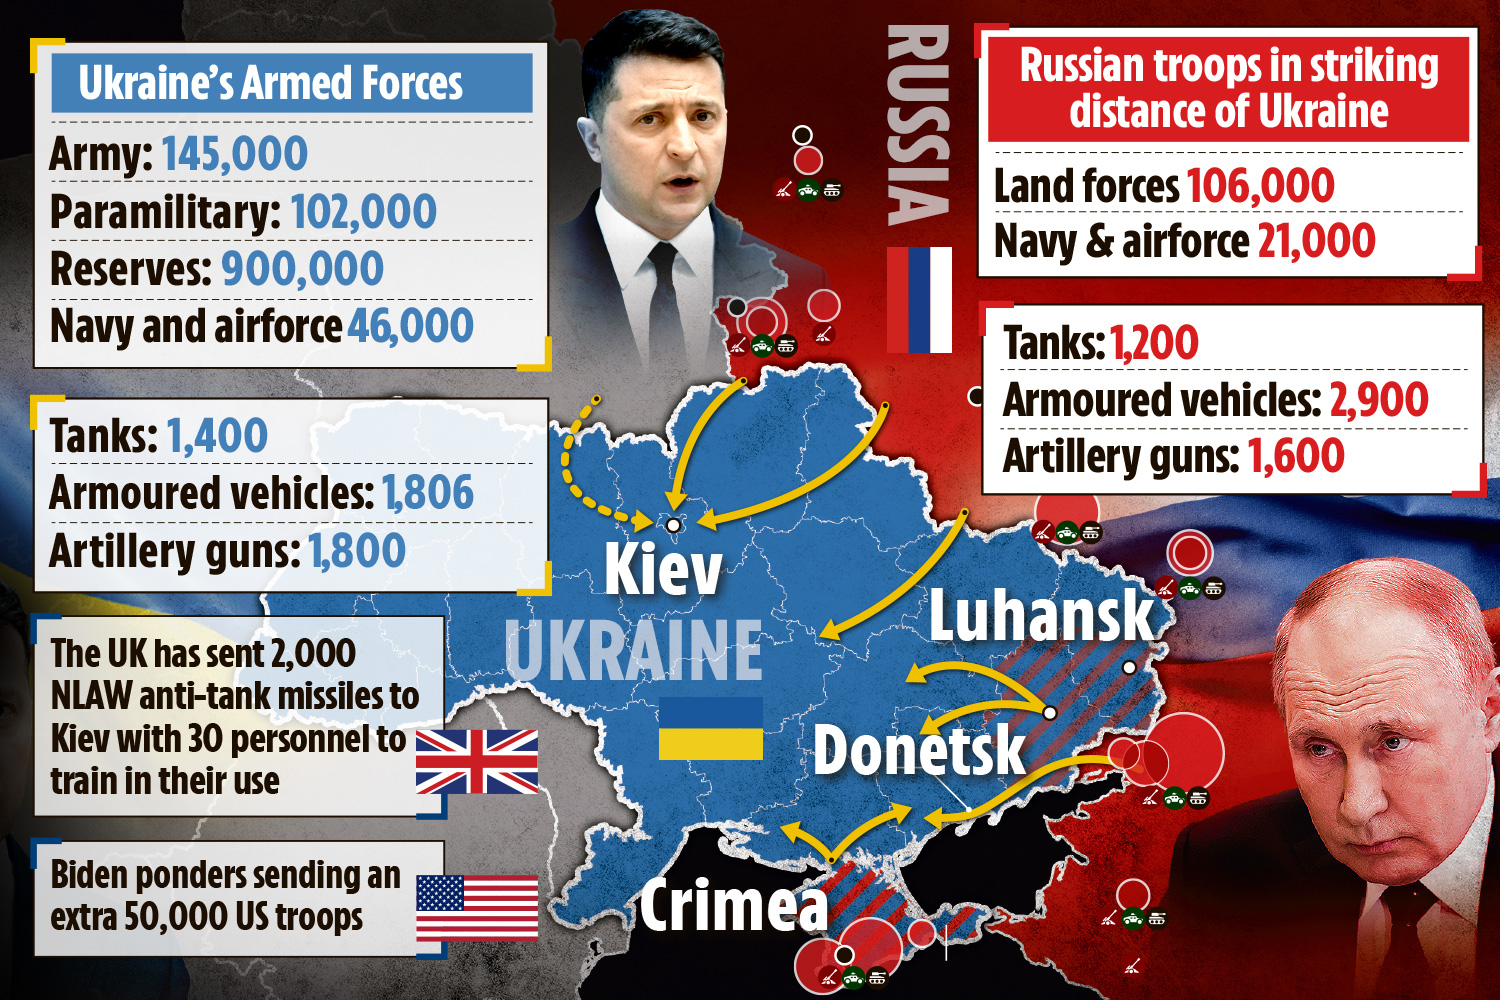 ukrayna rusya savaşı